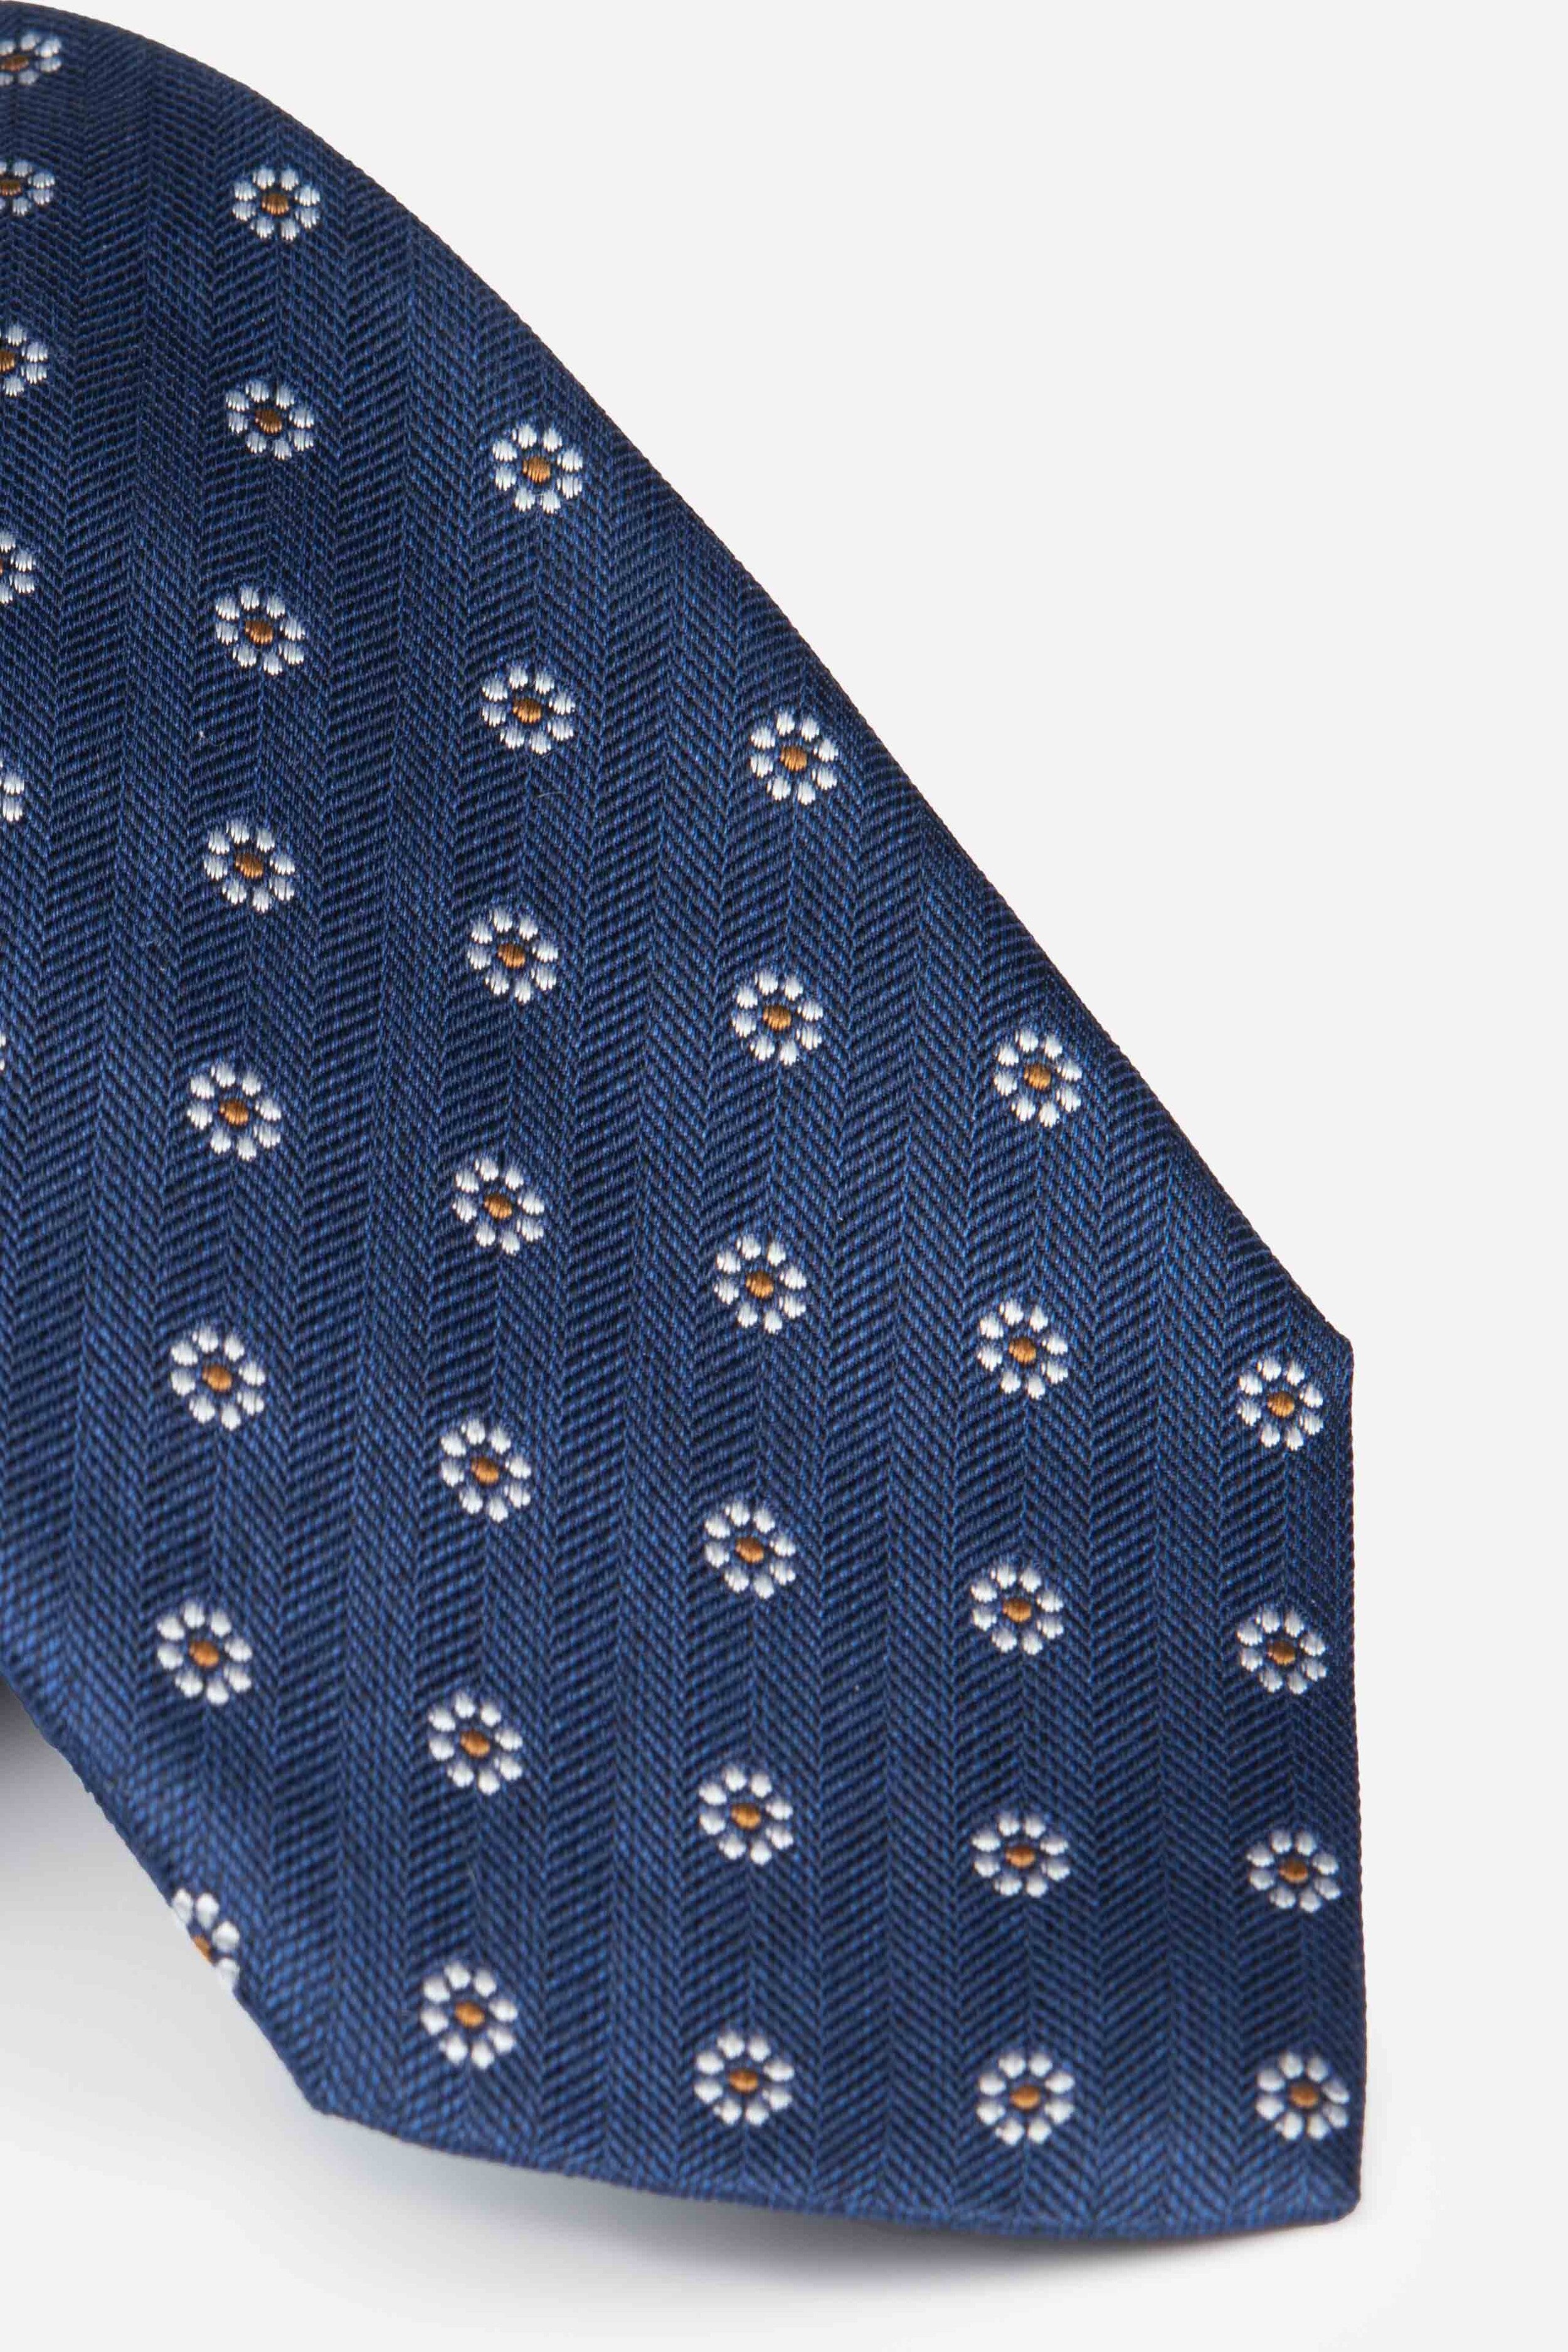 Men’s patterned tie - Blue pattern